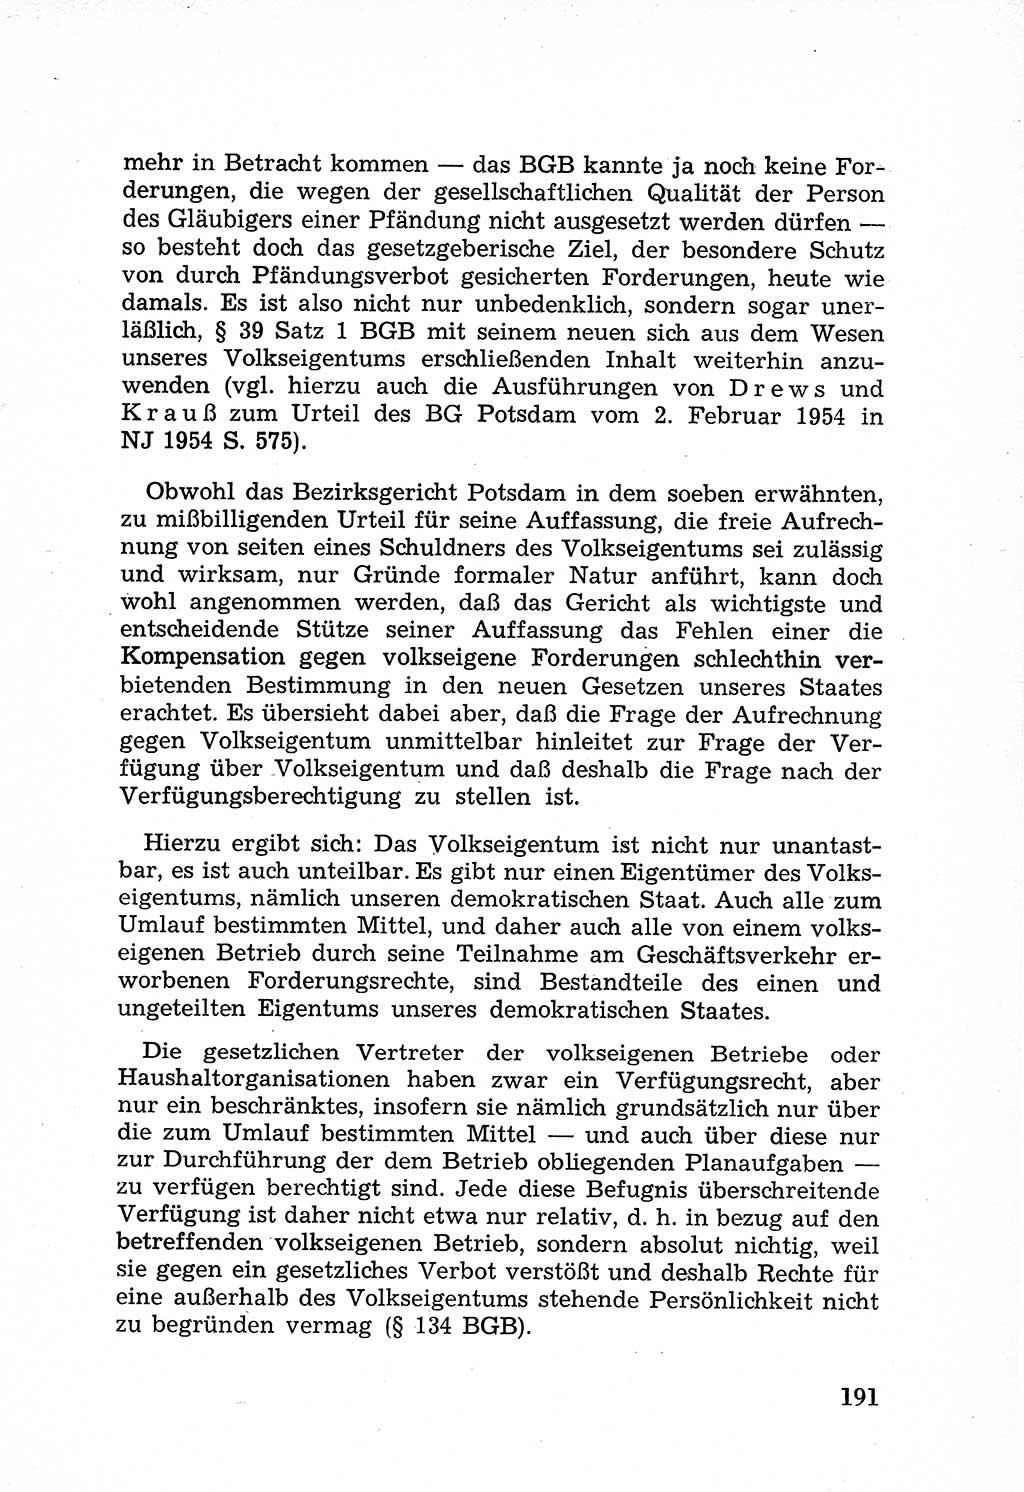 Rechtsstaat in zweierlei Hinsicht, Untersuchungsausschuß freiheitlicher Juristen (UfJ) [Bundesrepublik Deutschland (BRD)] 1956, Seite 191 (R.-St. UfJ BRD 1956, S. 191)